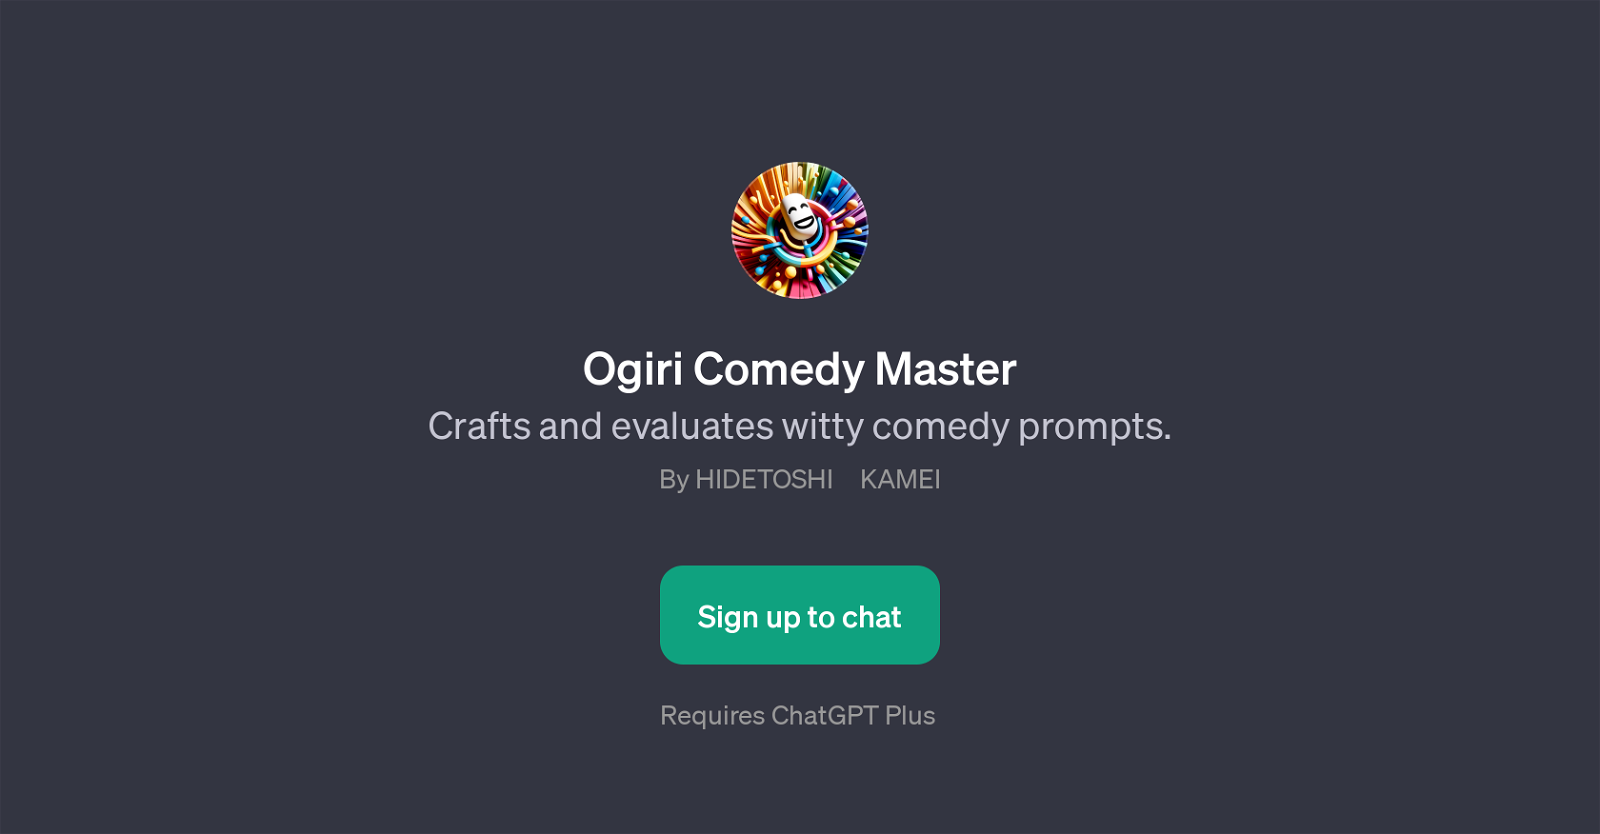 Ogiri Comedy Master website